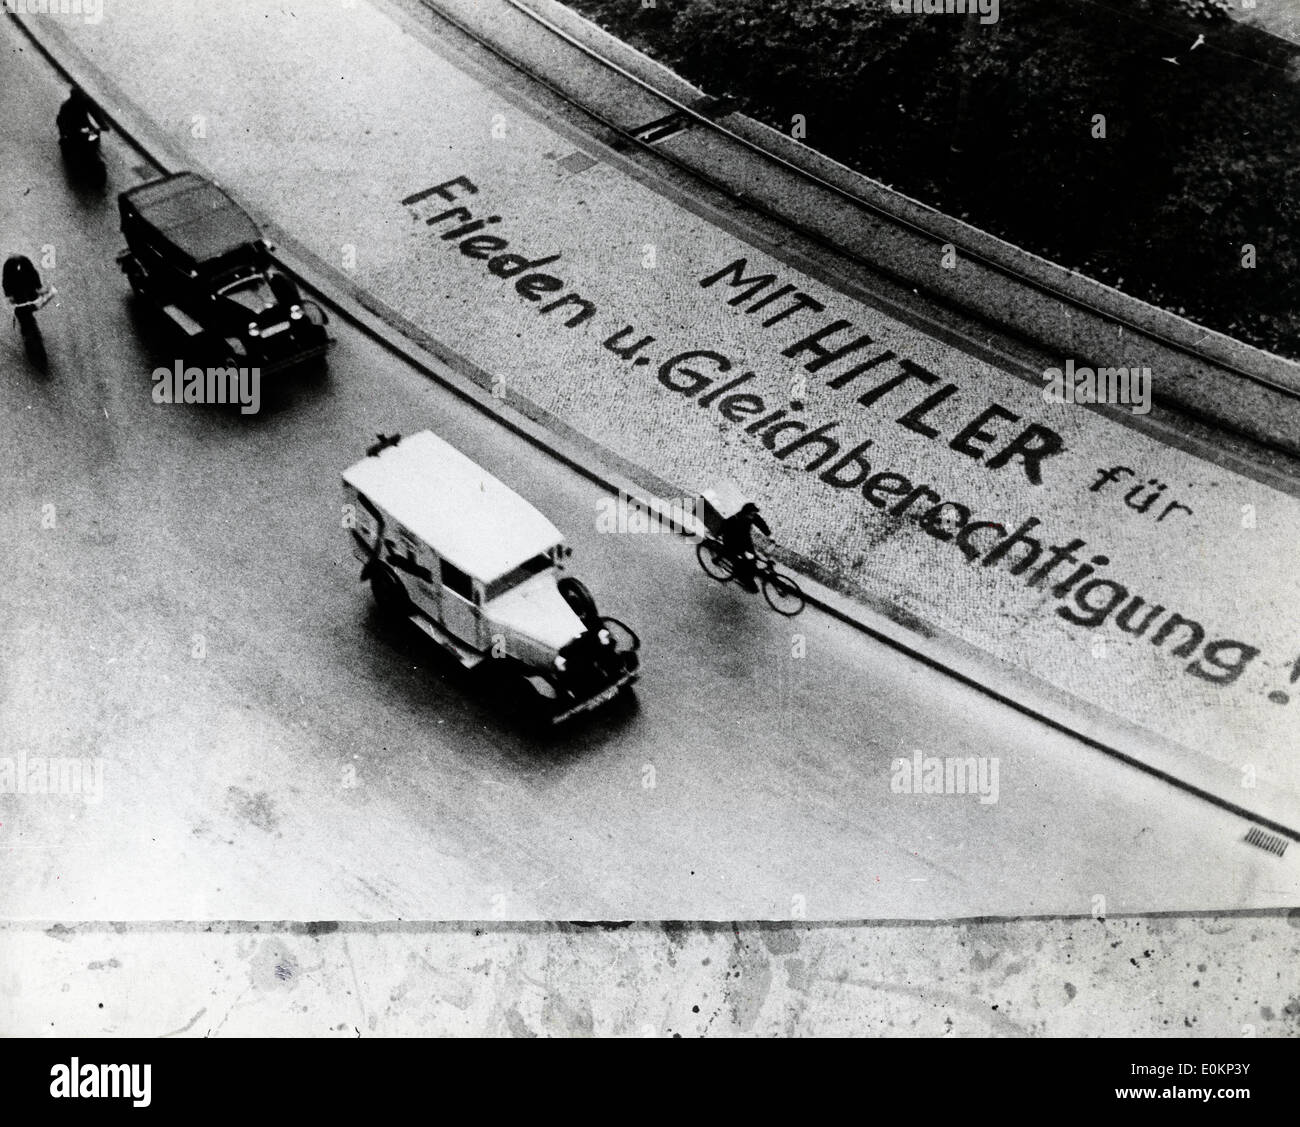 Nazi propaganda on the Pavement Stock Photo